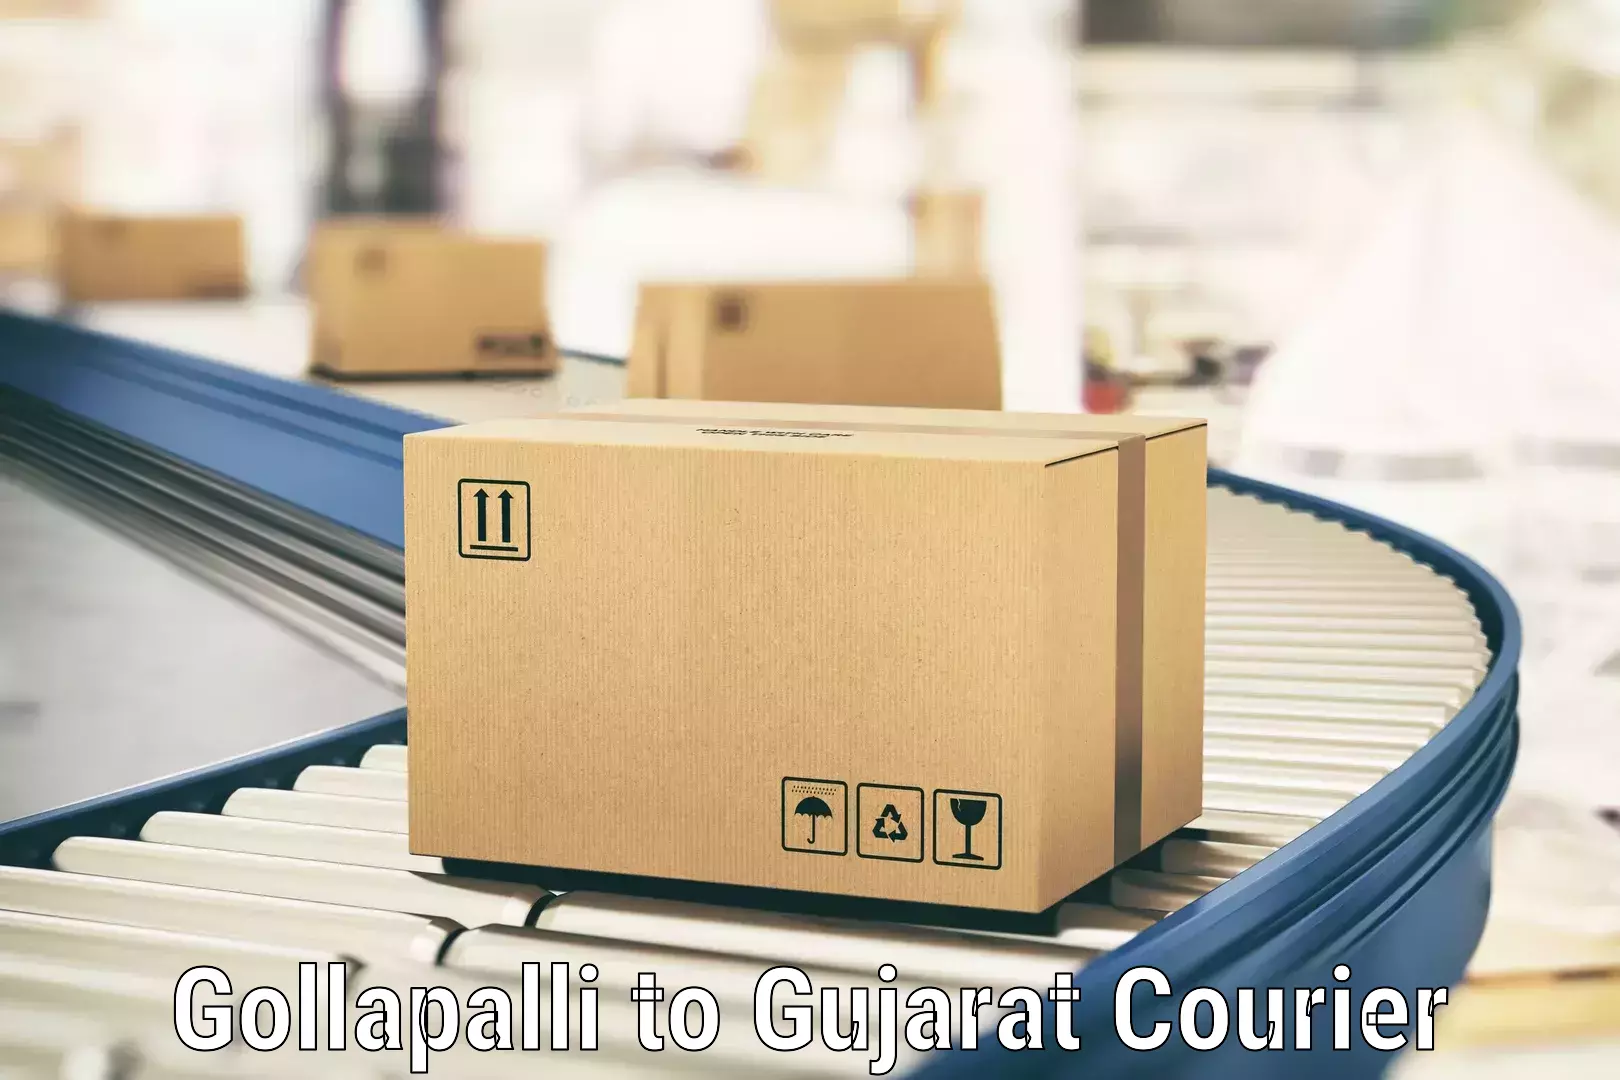 Flexible parcel services Gollapalli to Khambhat